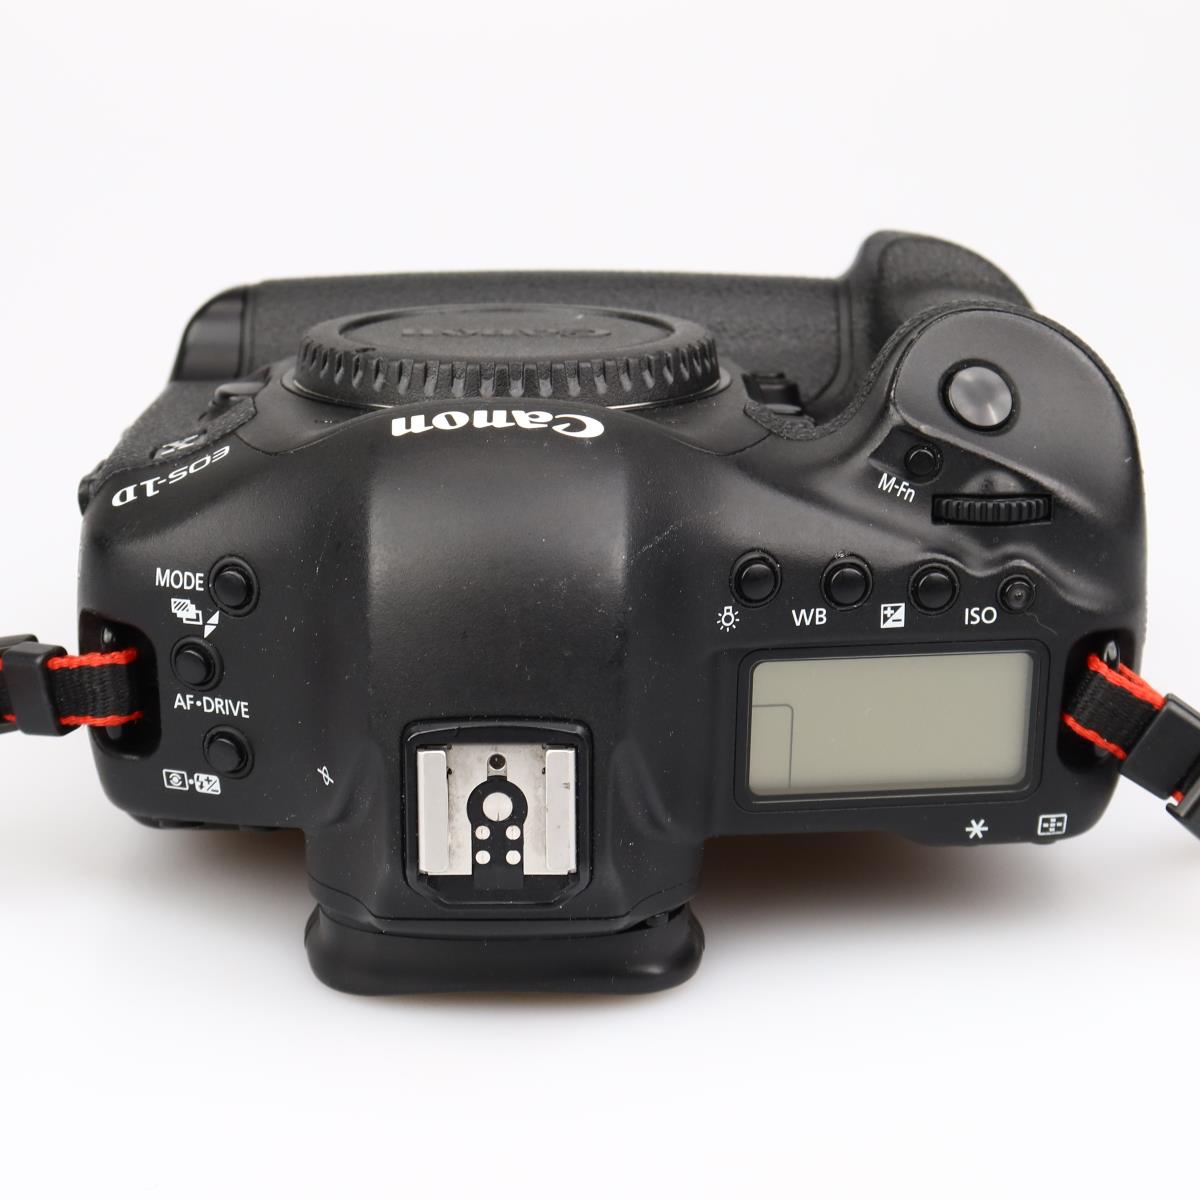 (Myyty) Canon EOS 1DX runko (SC: 103000) (käytetty)